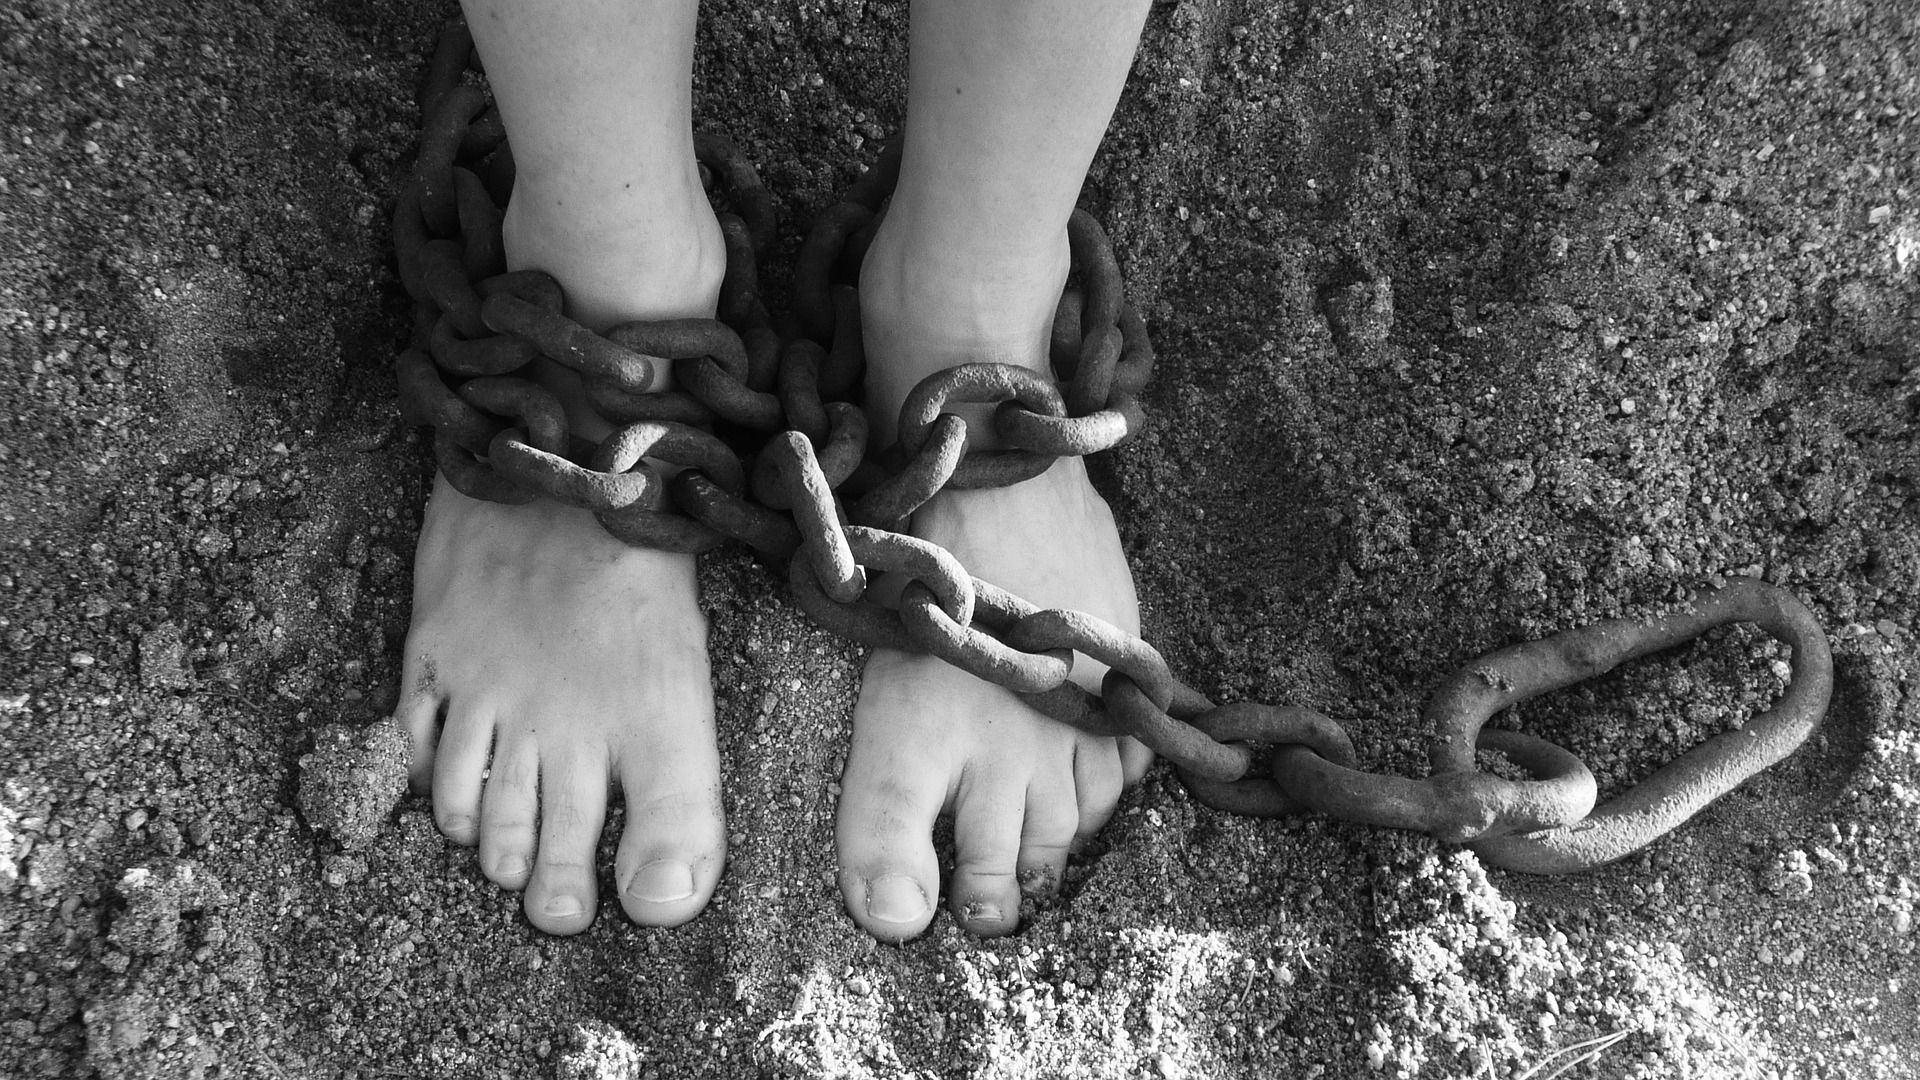 chains around person's feet